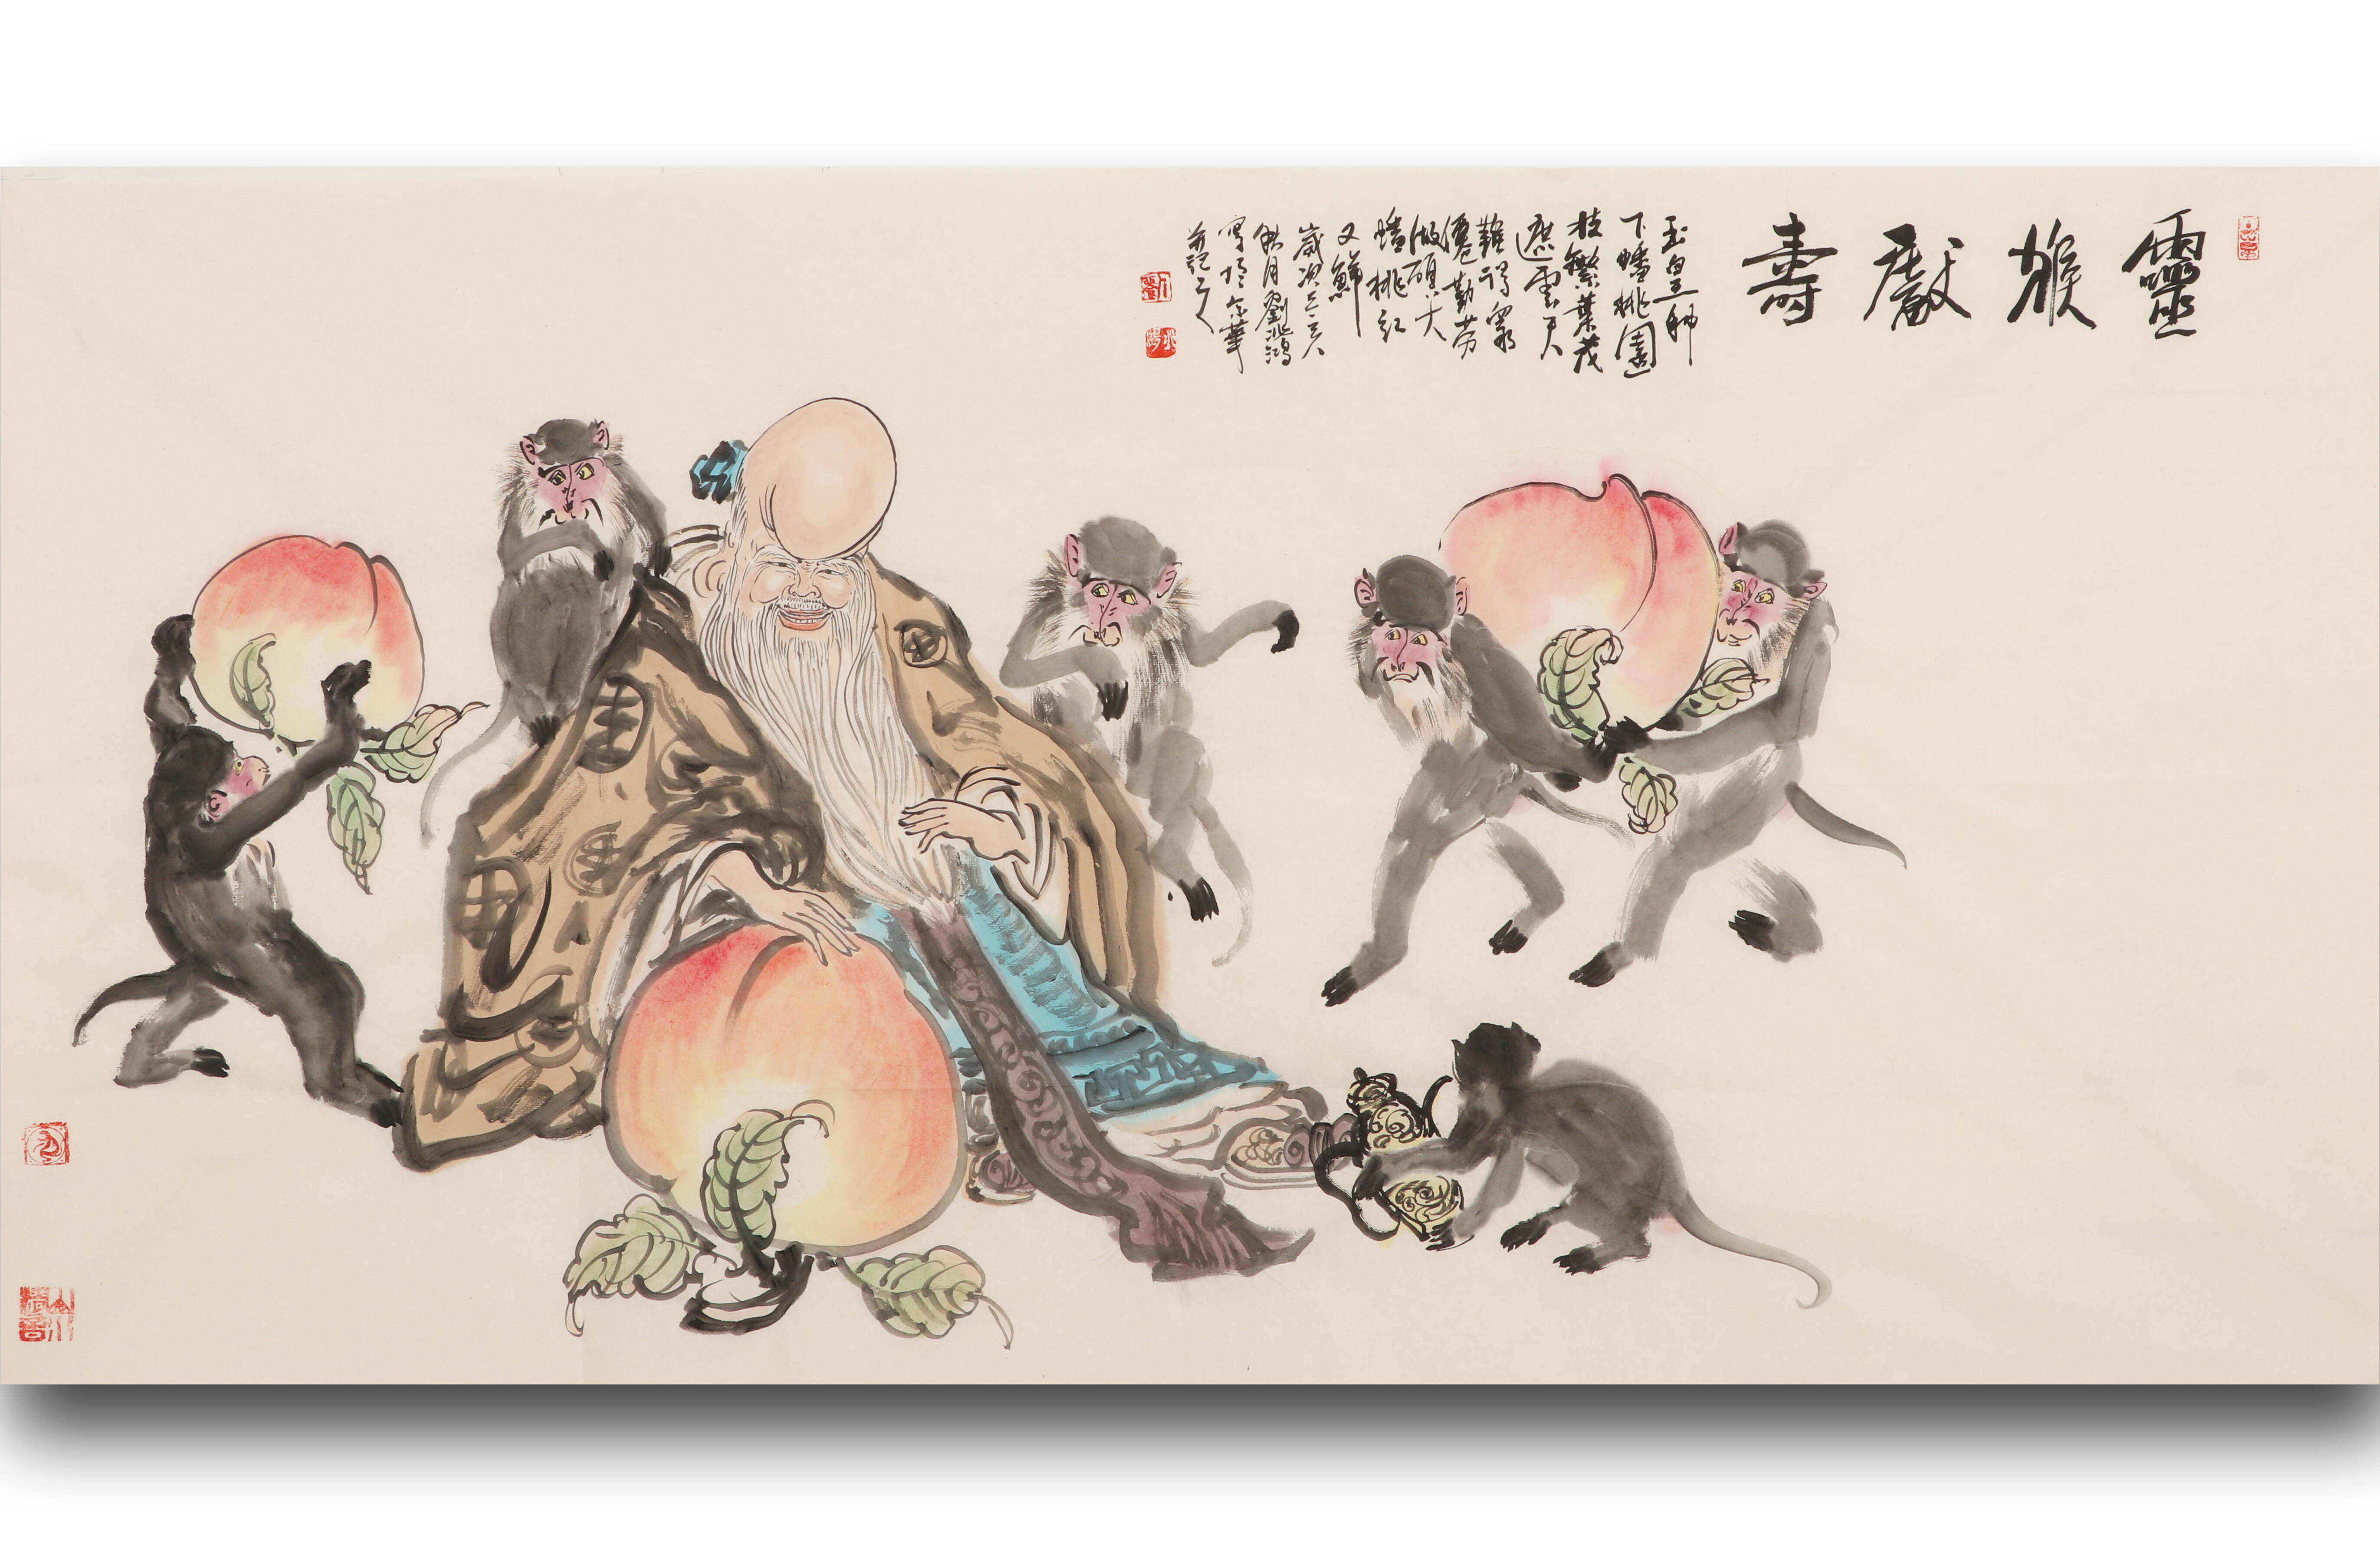 中国画《祥瑞之兽》系列作品展 画猴名家刘兆鸿作品展《灵猴献寿》